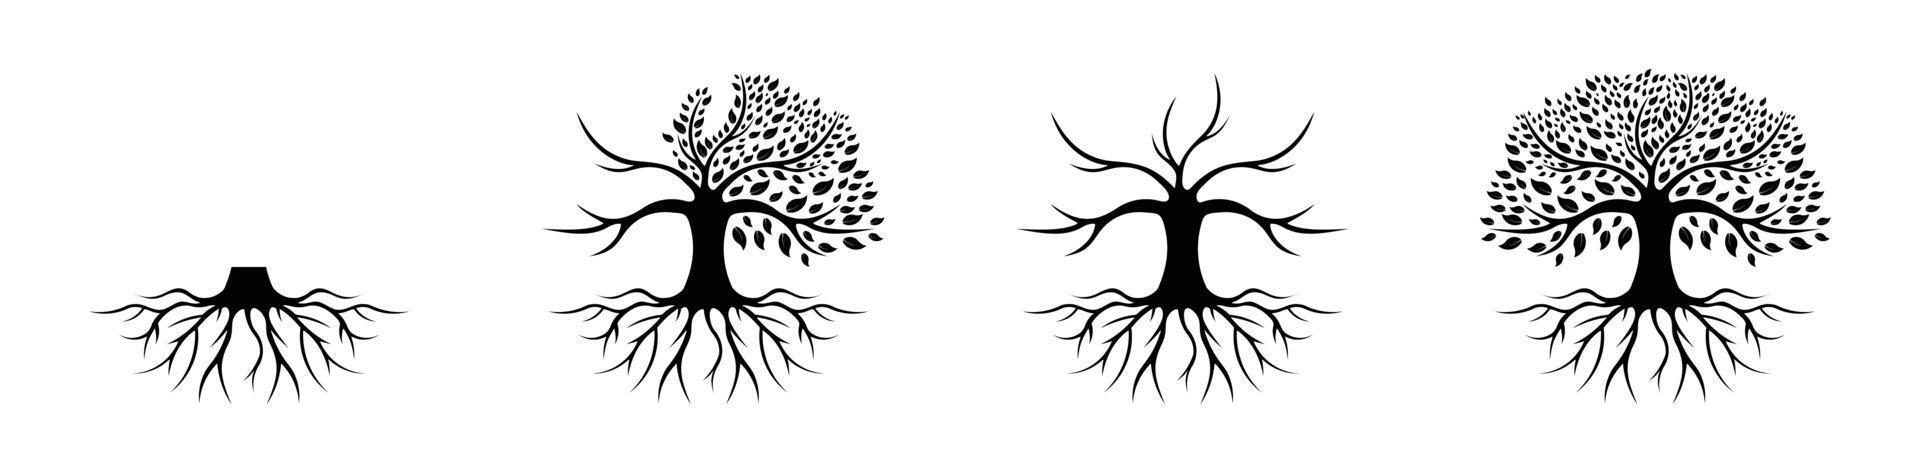 tree of life logotyp design inspiration isolerad på vit bakgrund, svart ek logotyp och rötter design vektorillustration vektor